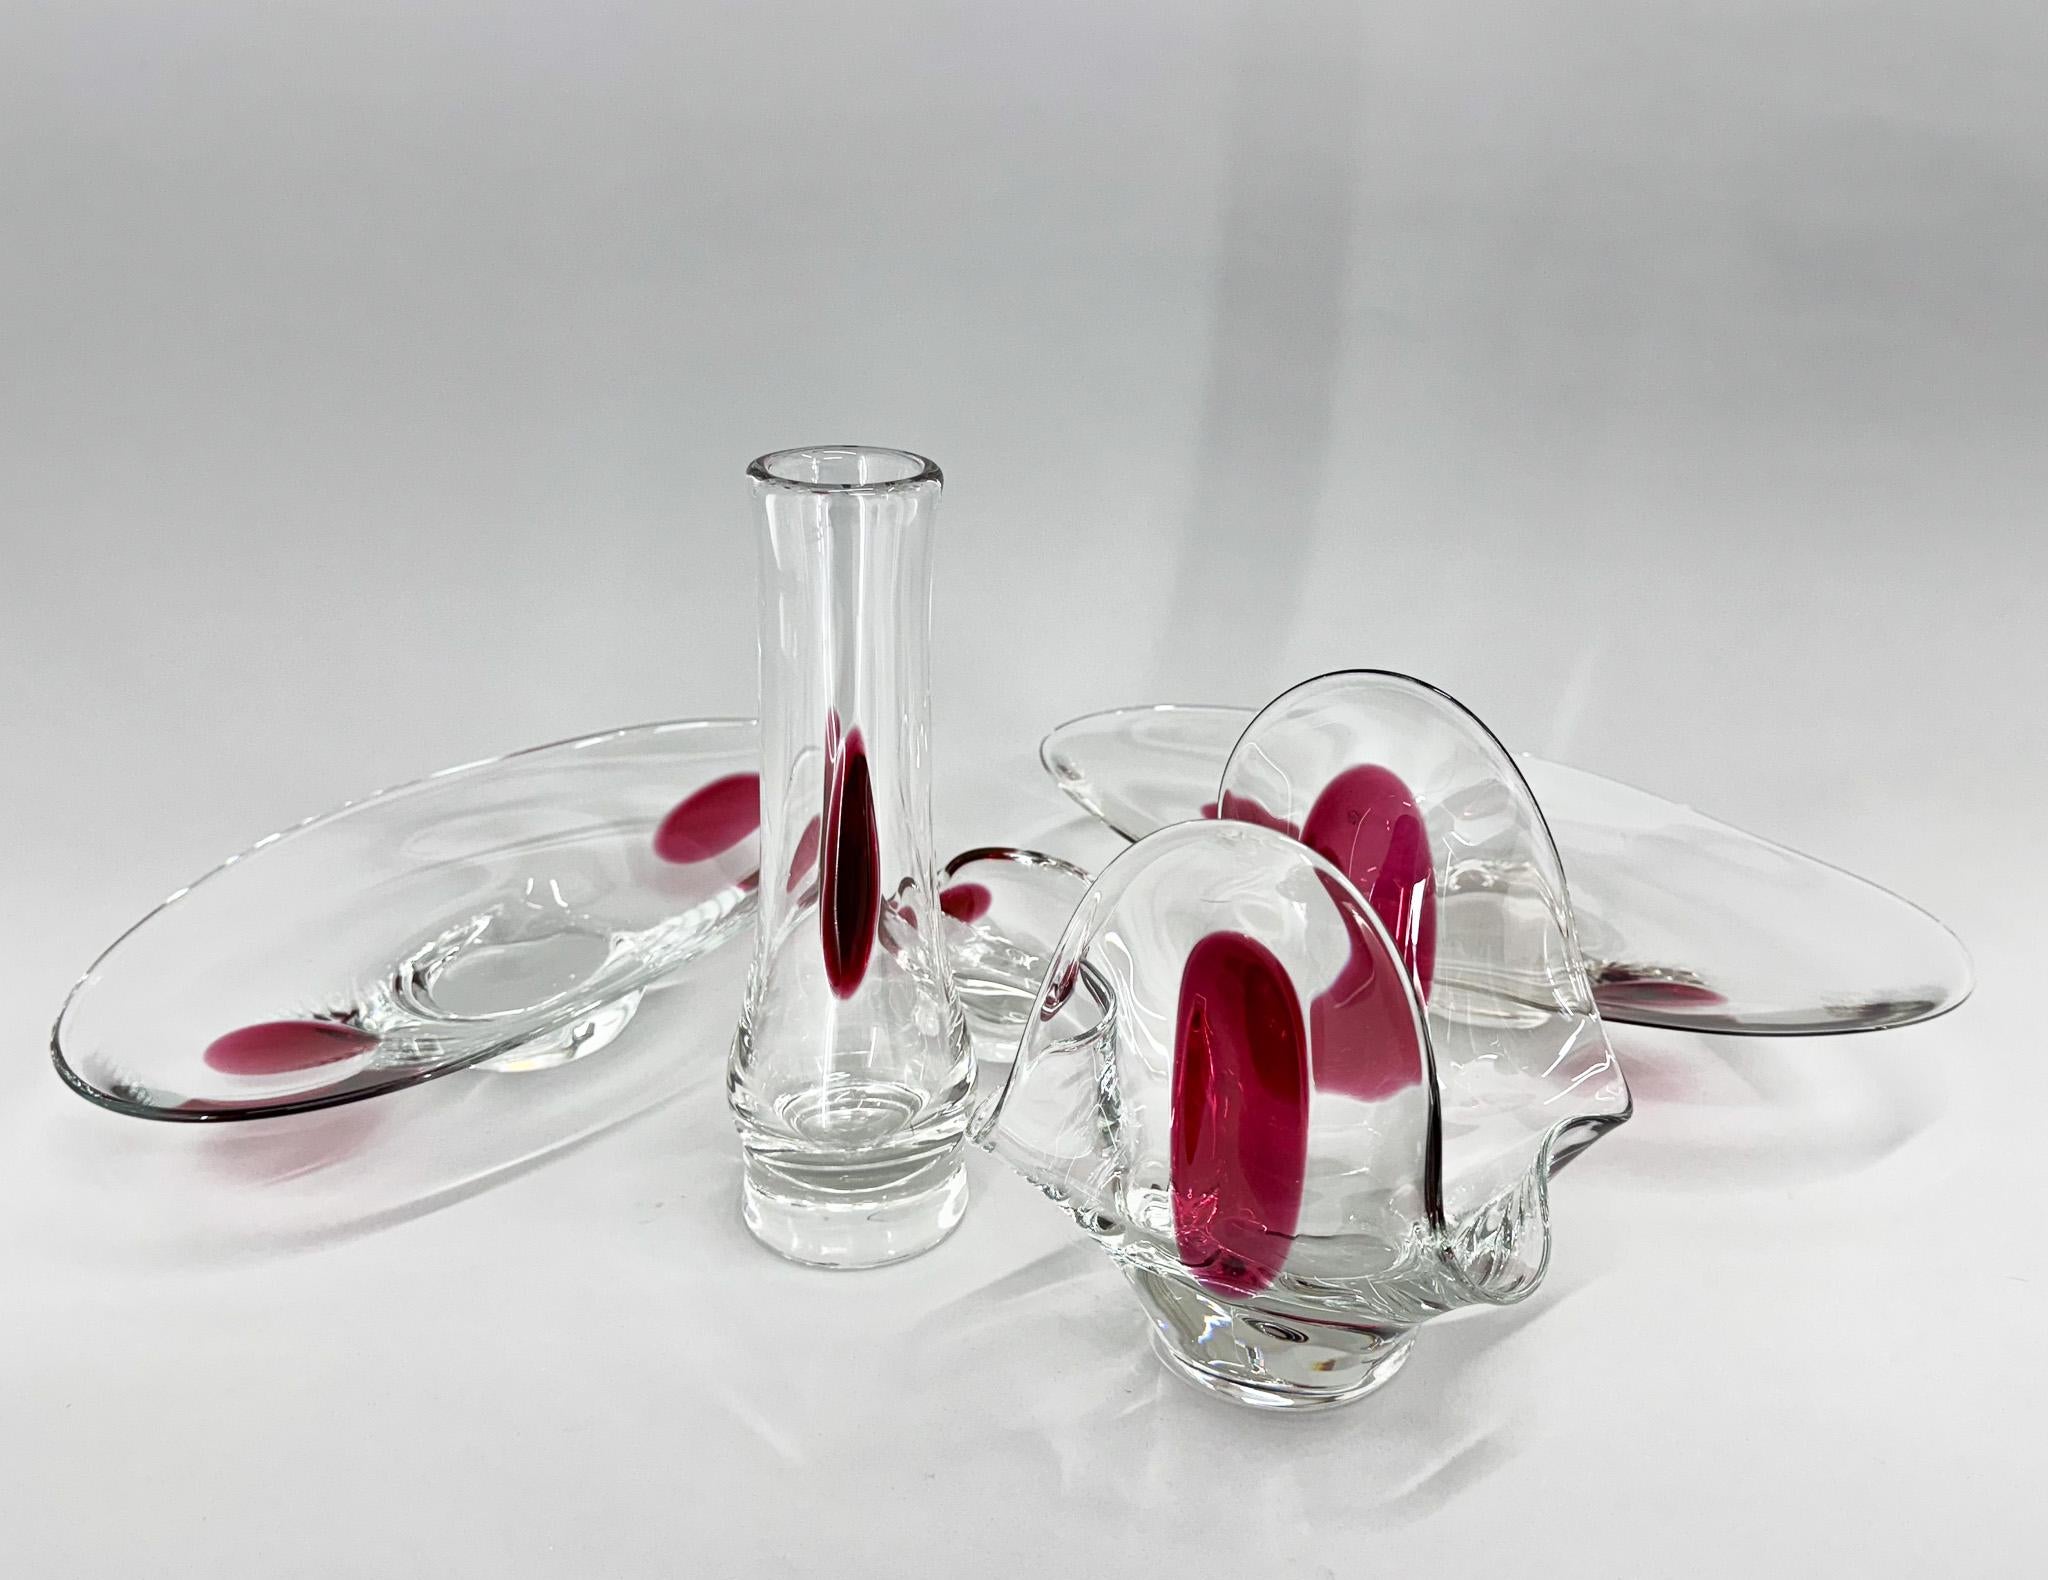 Ein Set von fünf einzigartigen Glaskunstwerken, entworfen von Jaroslav Tabary und hergestellt von der Glashütte Lednicke Roven in den 1970er Jahren in der ehemaligen Tschechoslowakei. Es ist sehr selten, einen kompletten Satz wie diesen zu finden. 